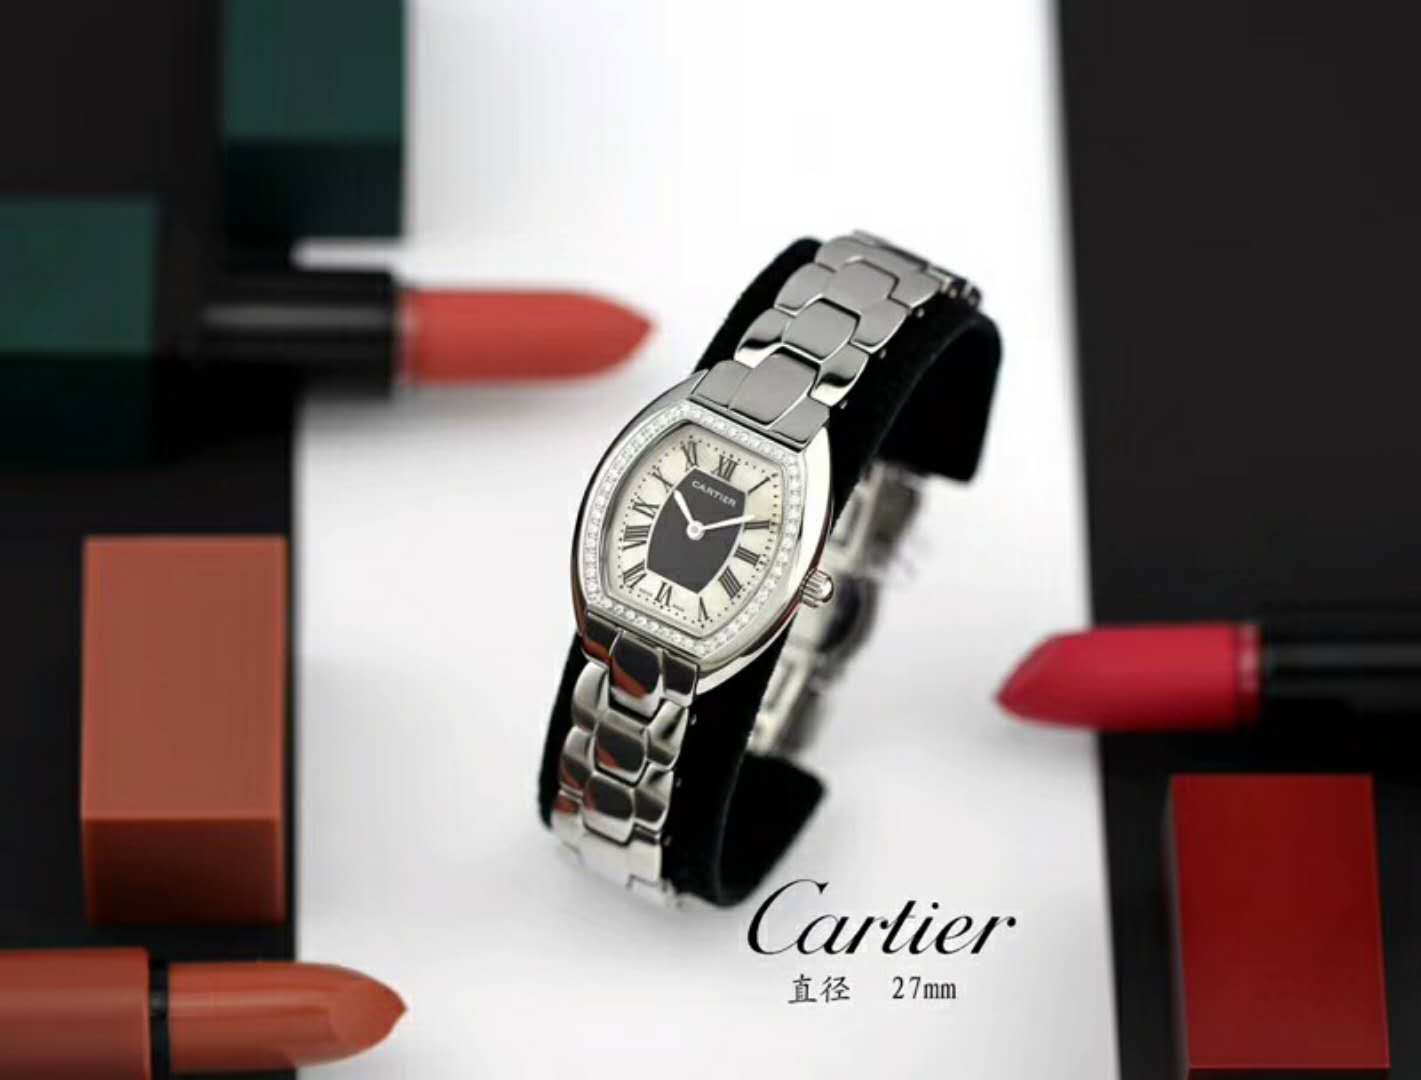 卡地亞 Cartier 推出的Tonneau腕錶，以酒桶為外形做壹體成形錶殼，較壹般腕錶小巧貼合手腕